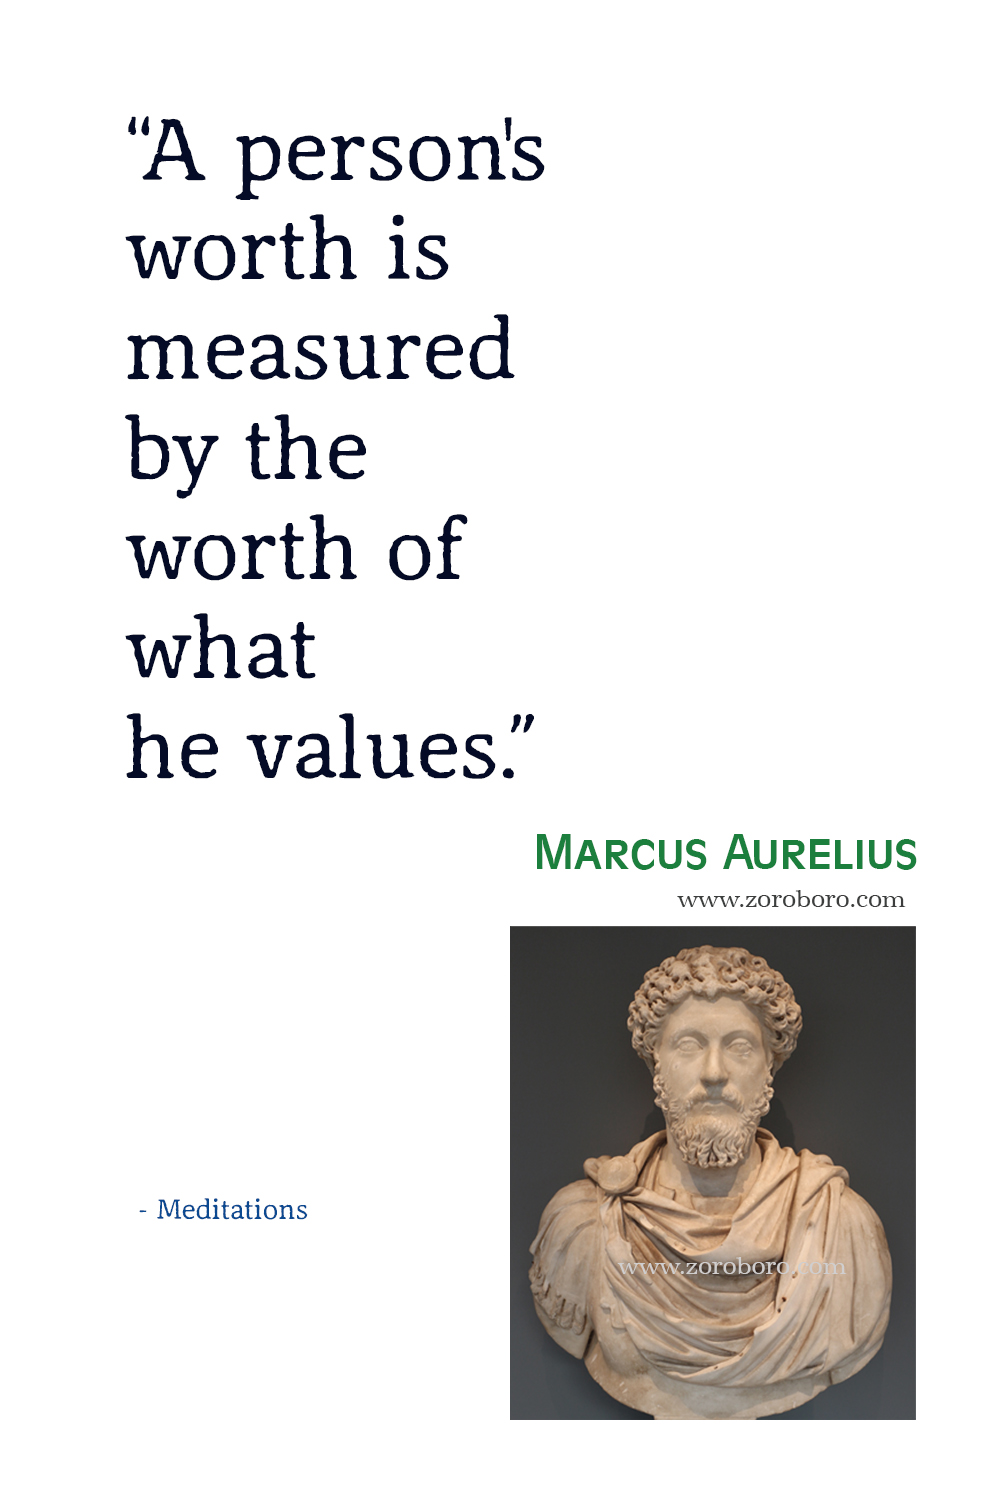 Marcus Aurelius Quotes, Marcus Aurelius Meditations Quotes, Marcus Aurelius Philosophy, Marcus Aurelius Books Quotes, Marcus Aurelius .